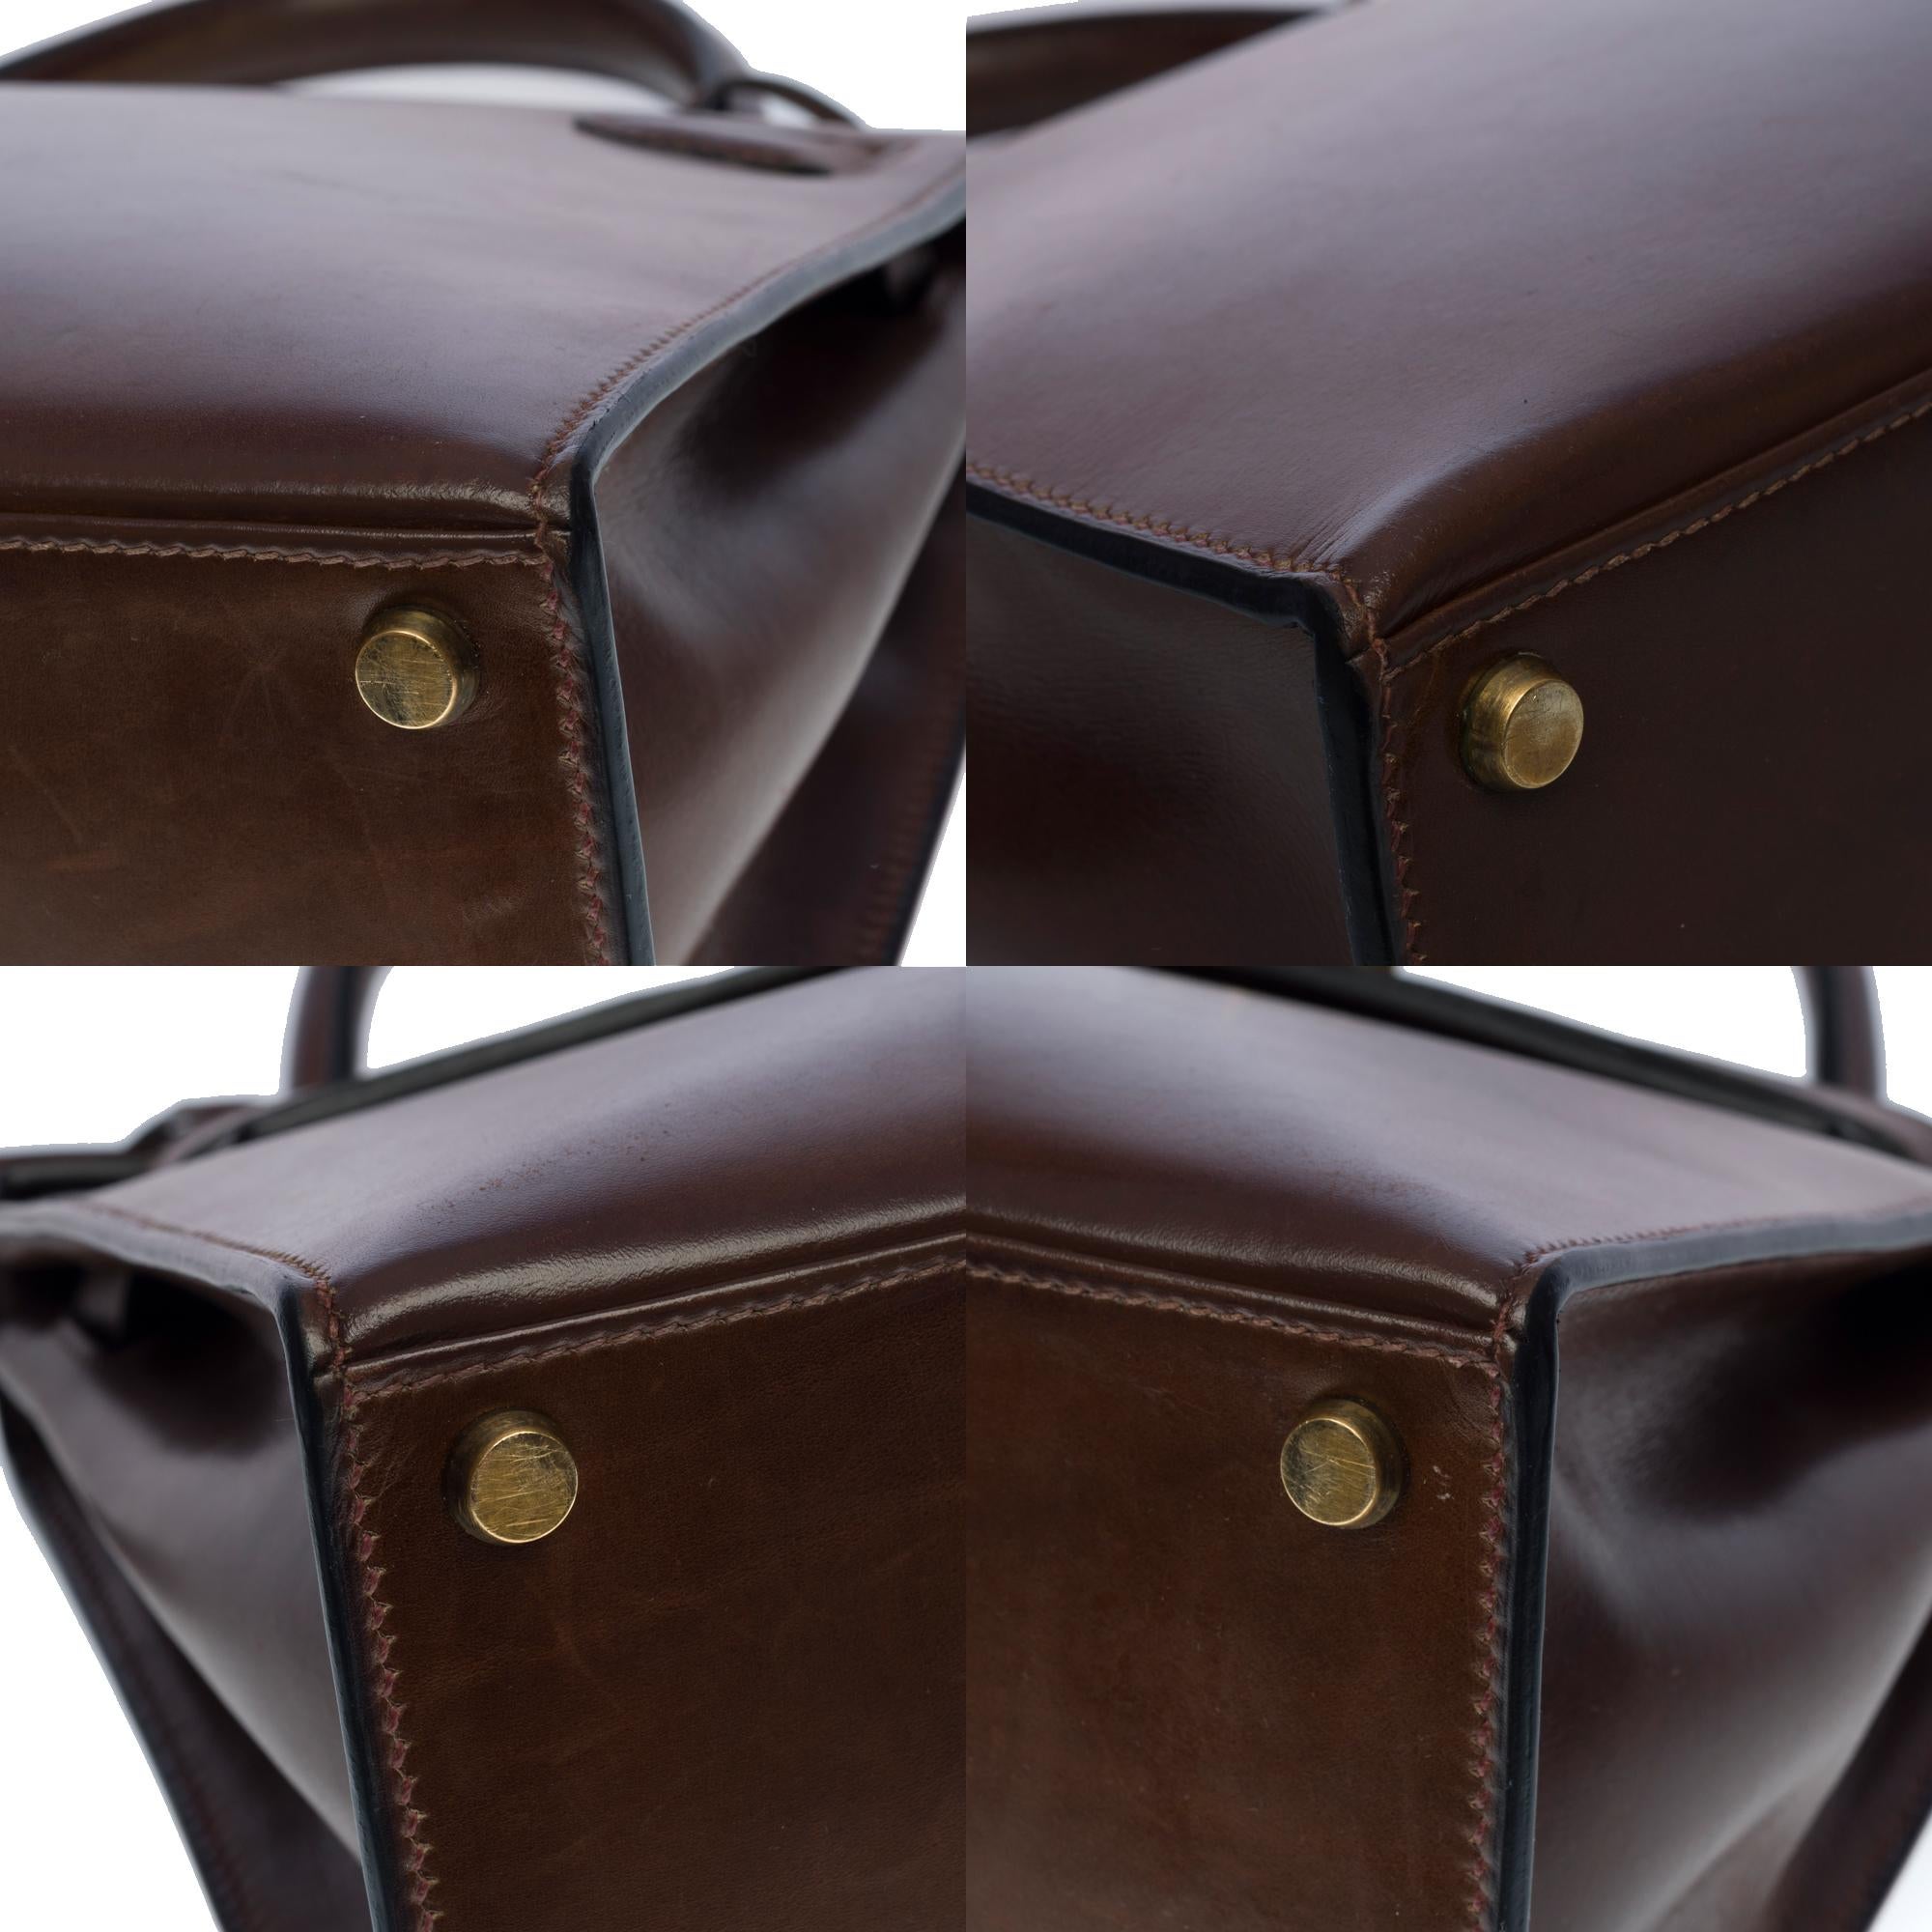 Amazing Hermes Kelly 28 sellier handbag in brown Calf leather, GHW 2